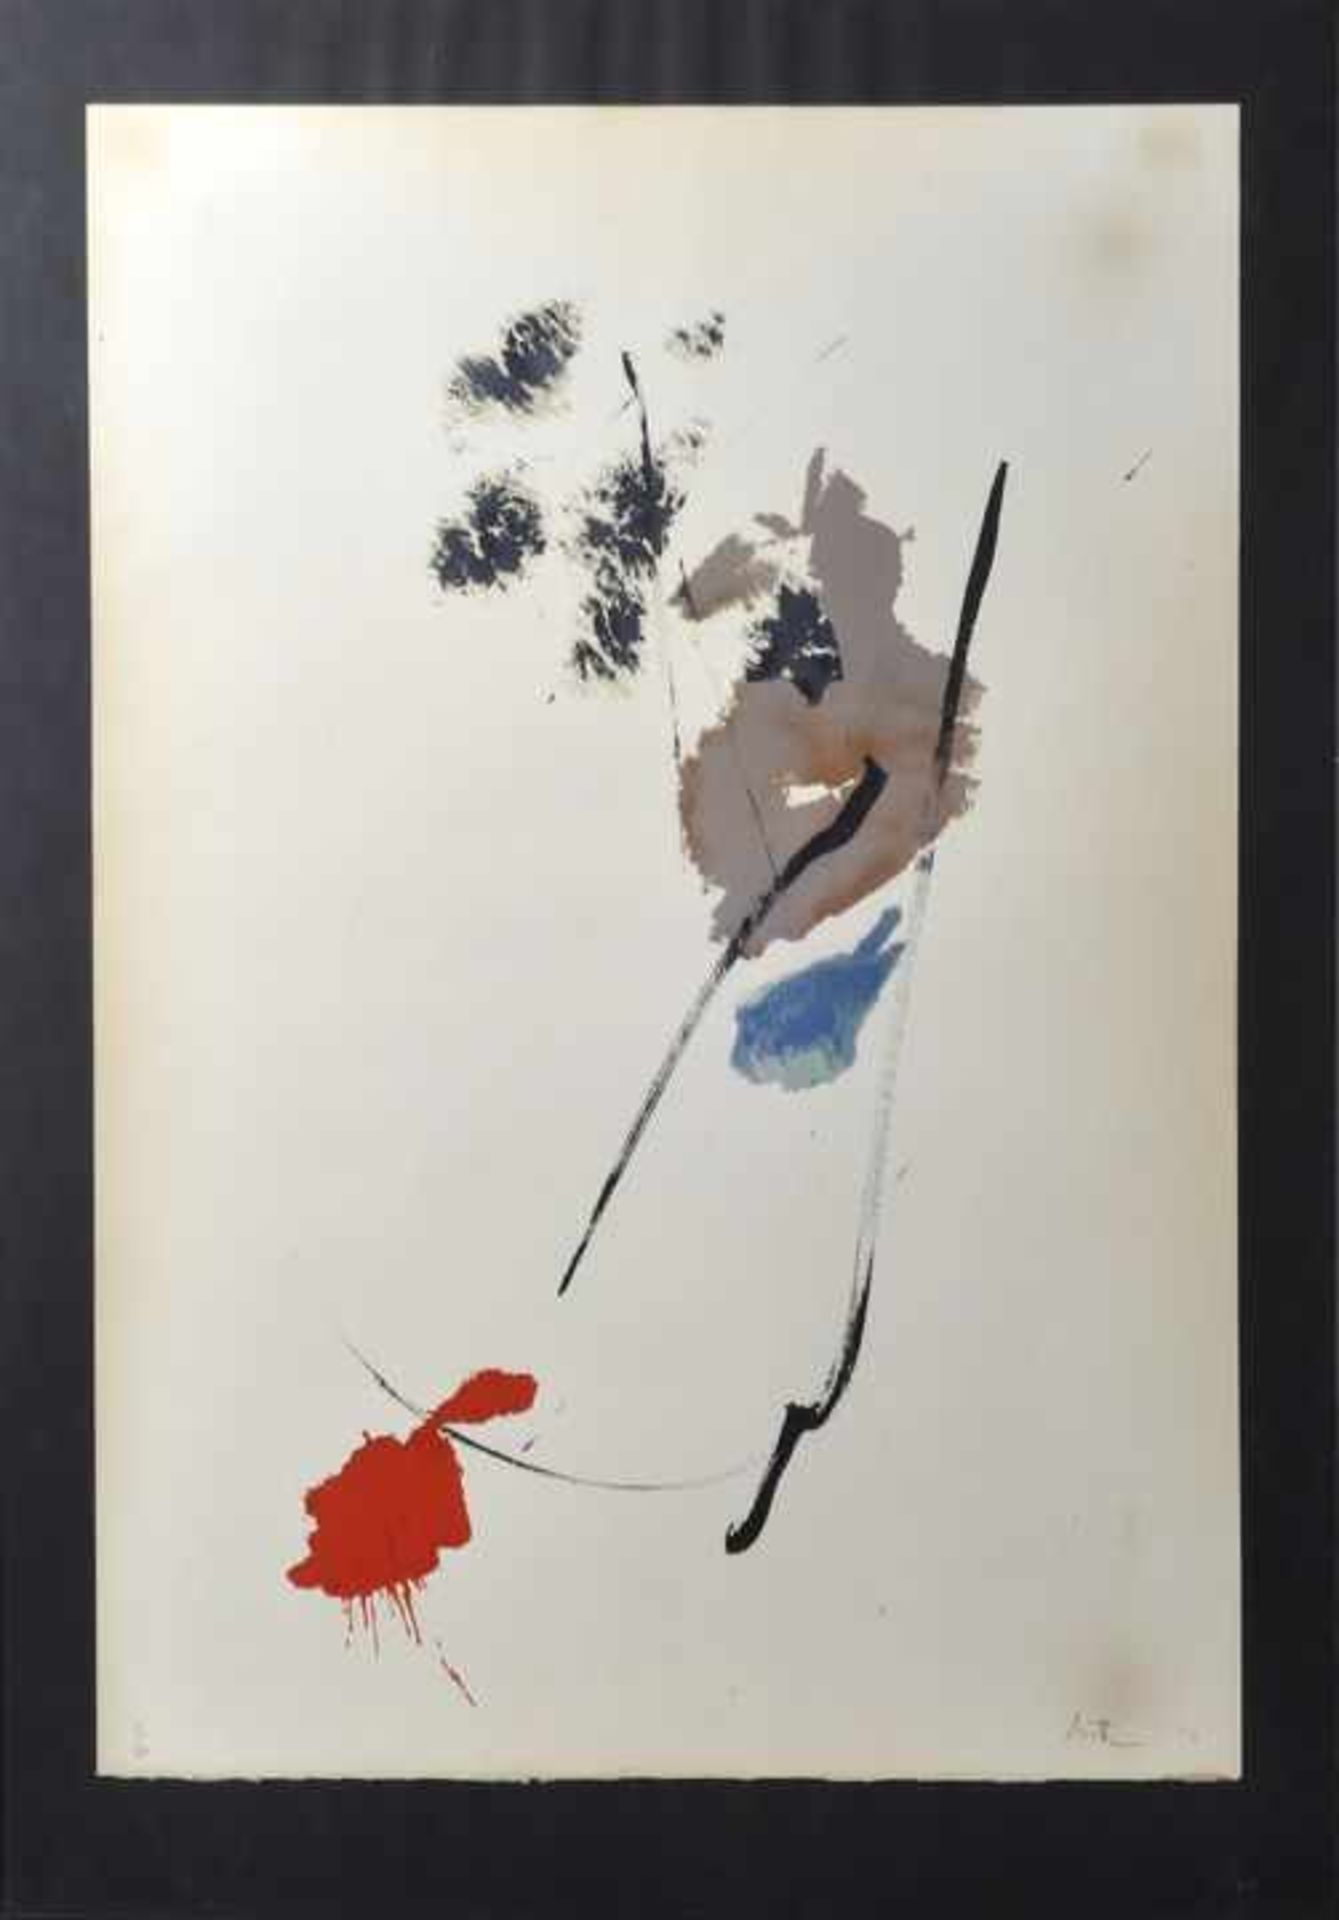 Miotte, Jean. 1926 Paris - 2016 PignansO.T. Abstrakte Komposition. Farblithographie, sign., num. Ex.